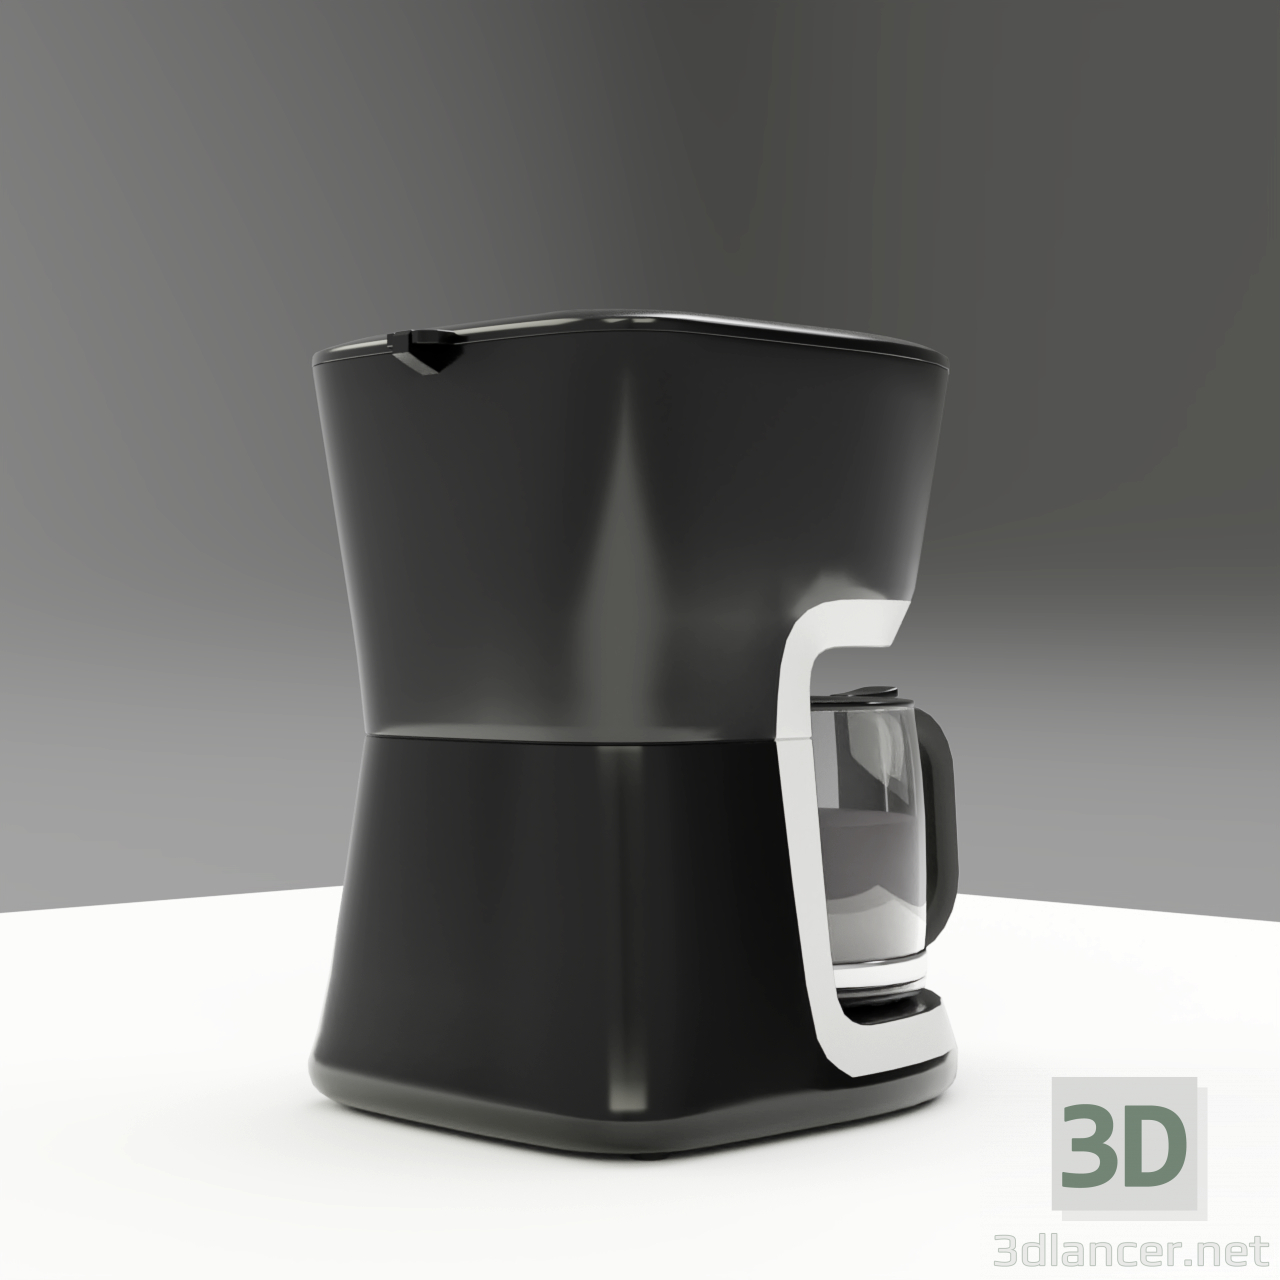 3d Electrolux Coffee Maker Ecm 3505 model buy - render